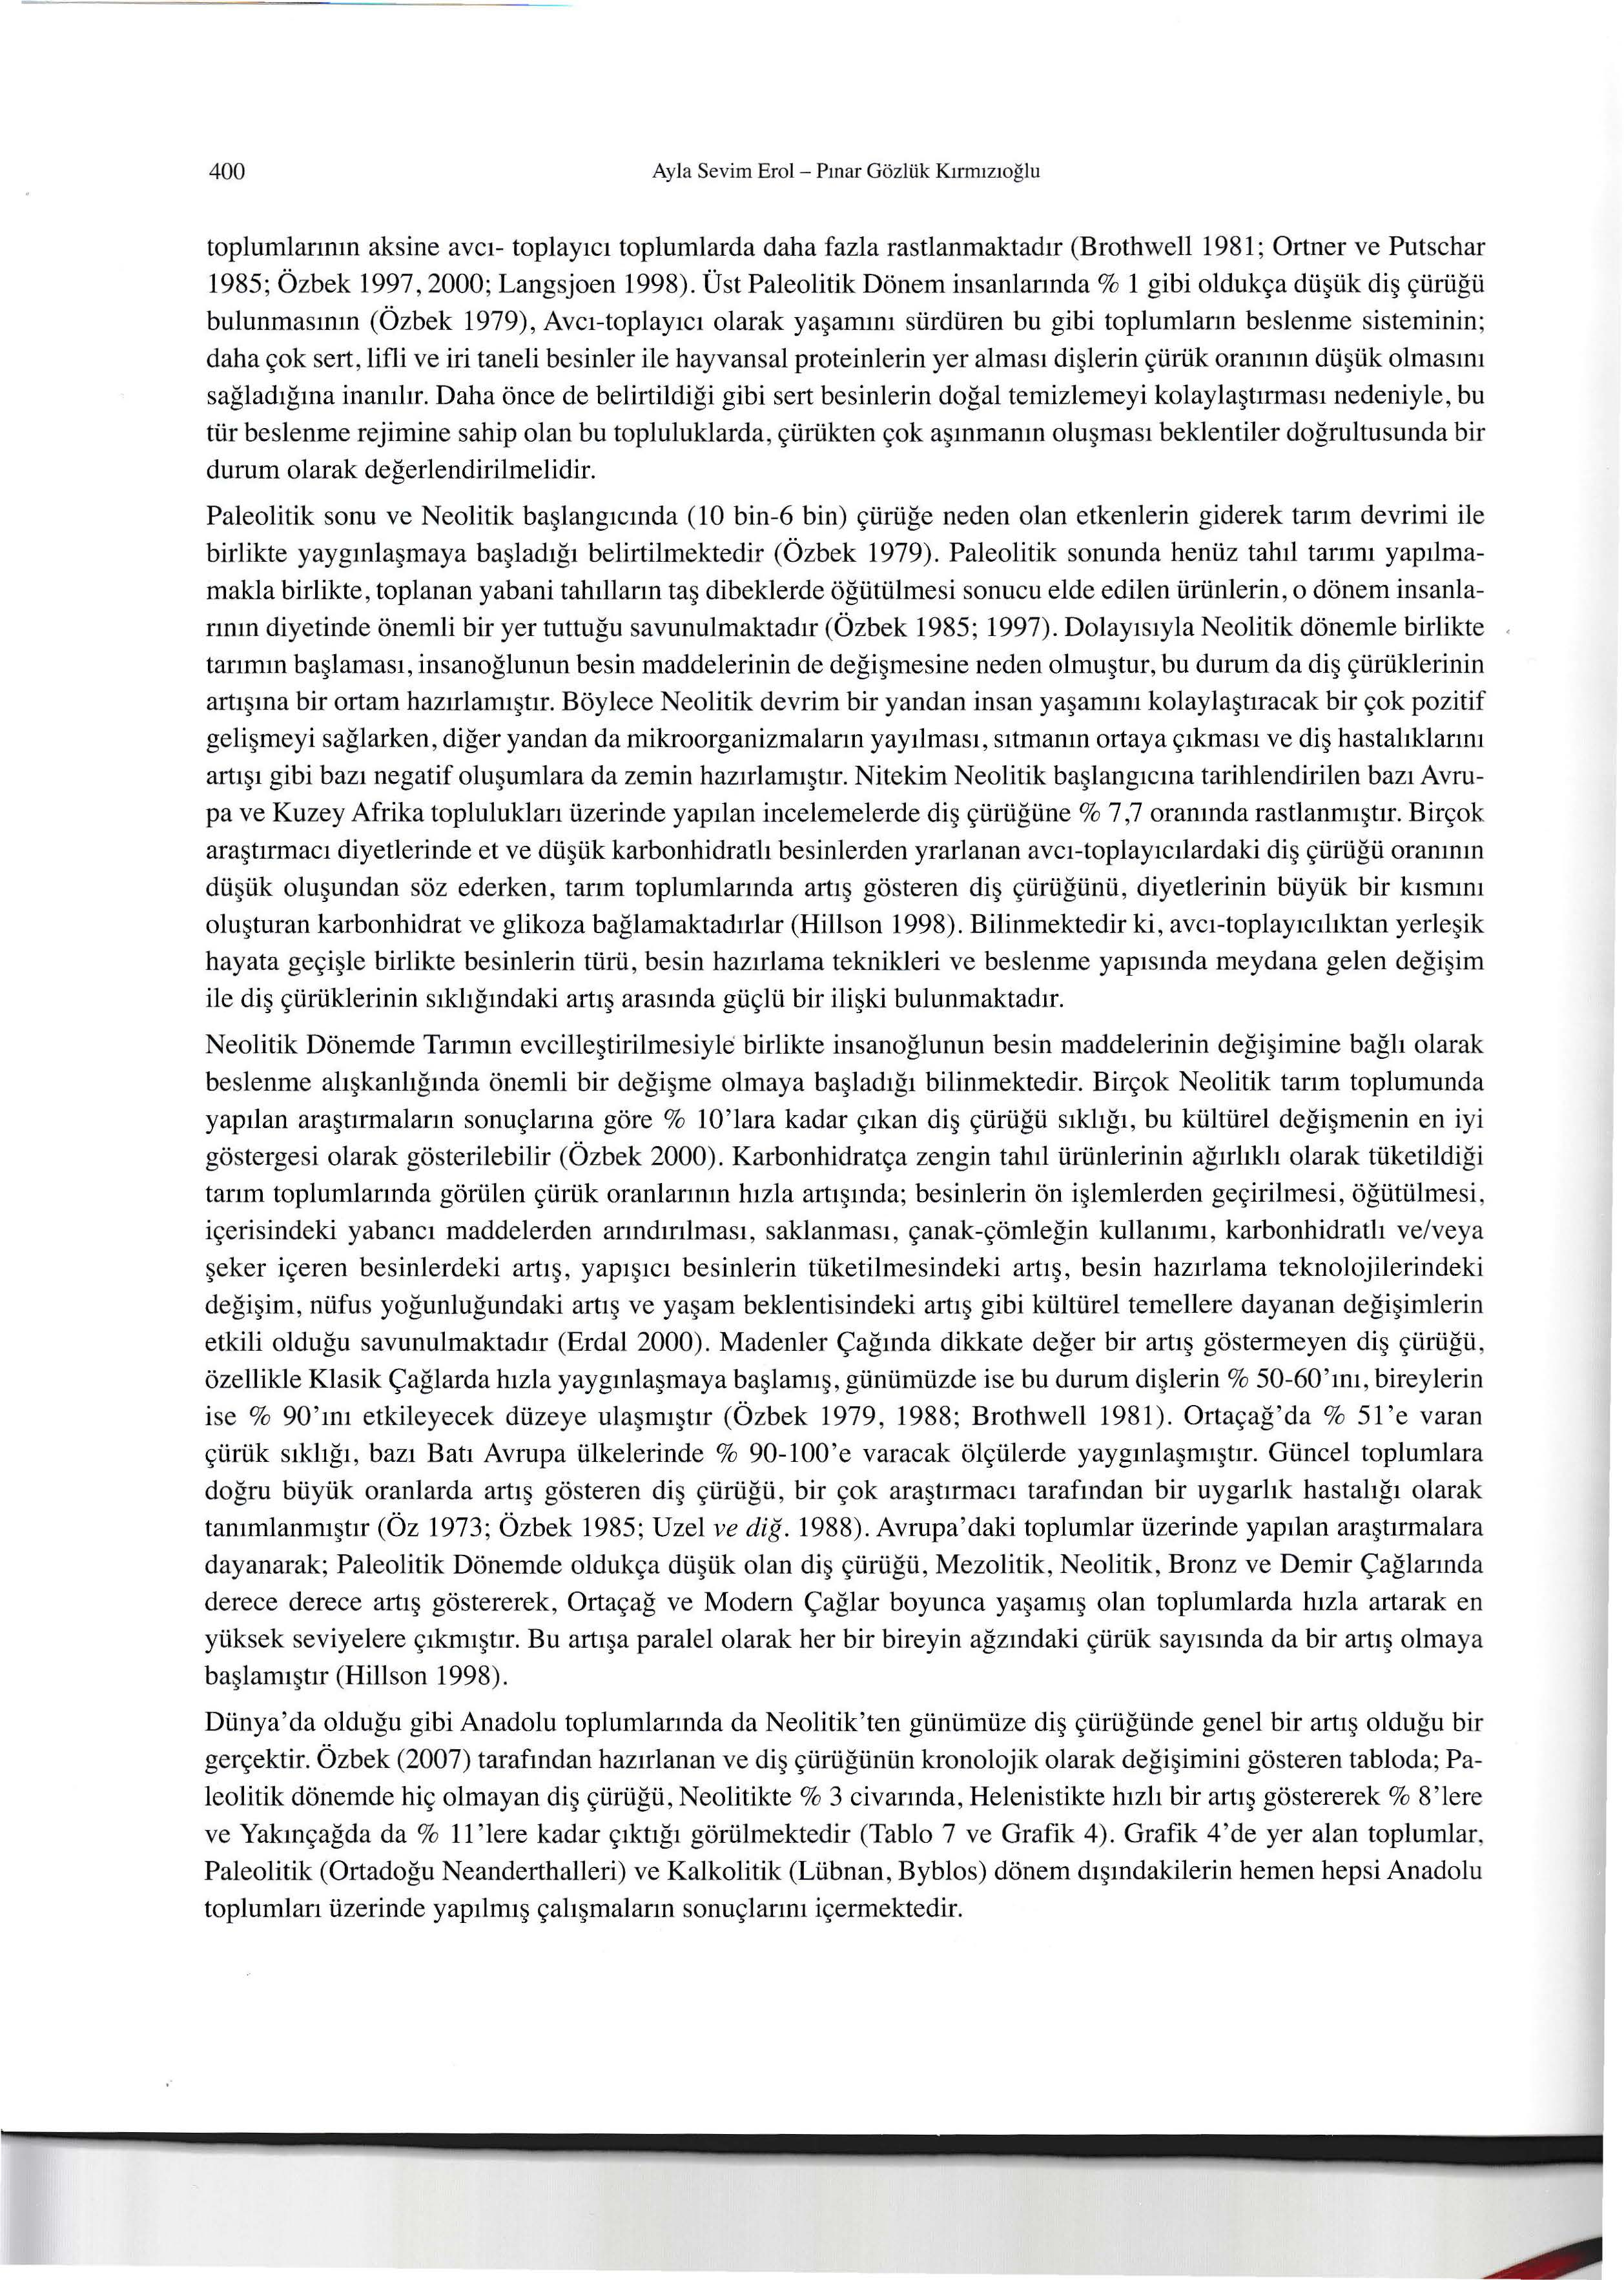 400 Ayla Sevim Erol - Pınar Gözlük Kırrruzıoğlu toplumlarının aksine avcı- toplayıcı toplumlarda daha fazla rastlanmaktadır (Brothwell 1981; Ortner ve Putschar 1985; Özbek 1997, 2000; Langsjoen 1998).